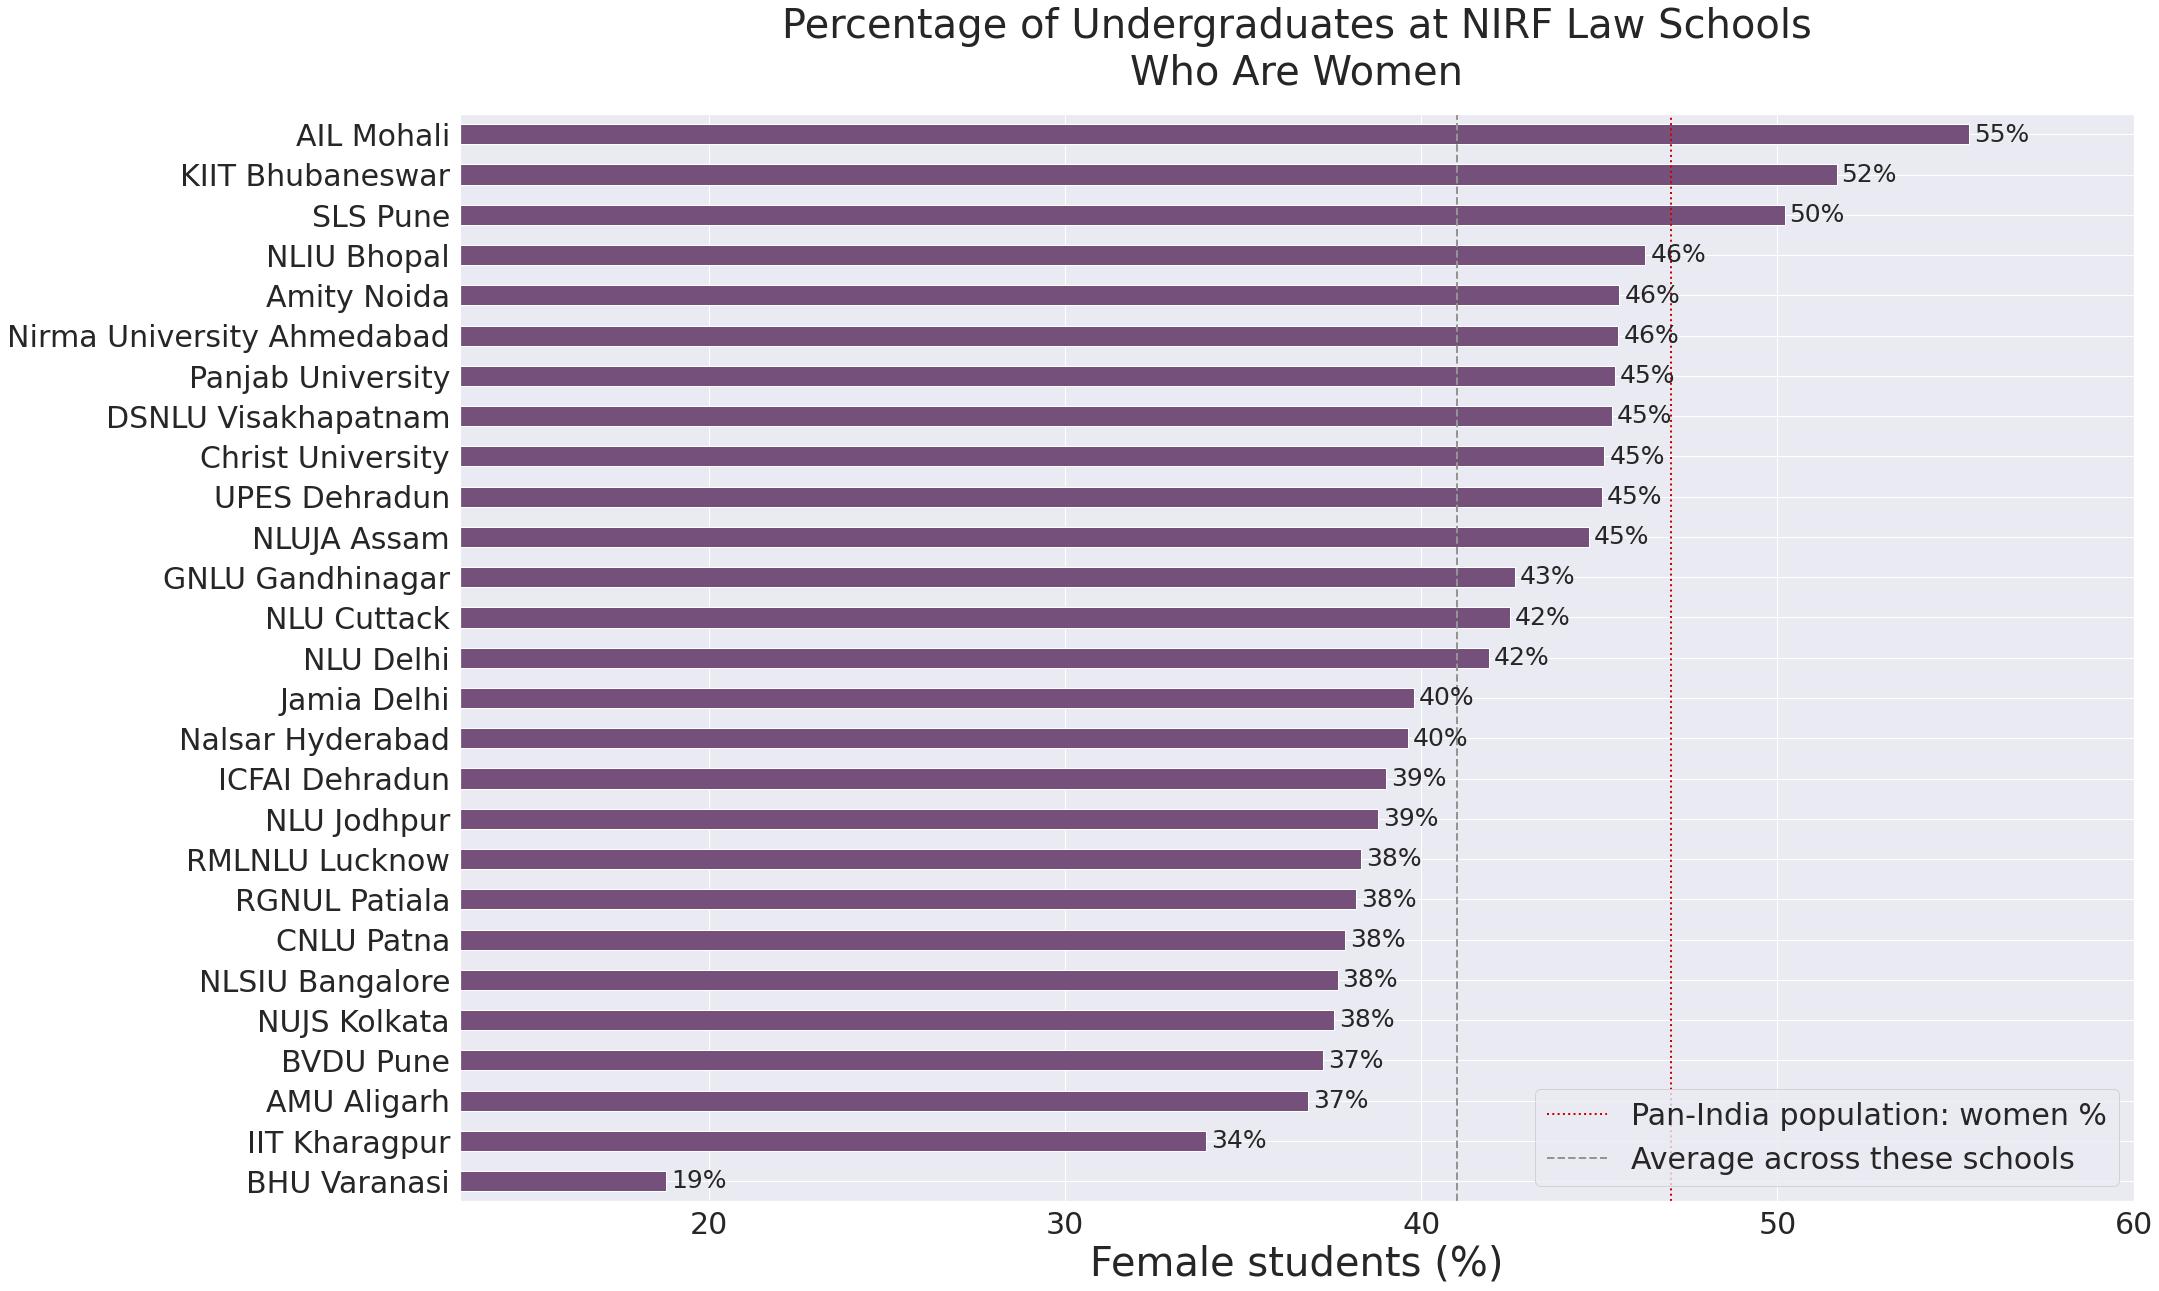 Percentage of female undergraduate students